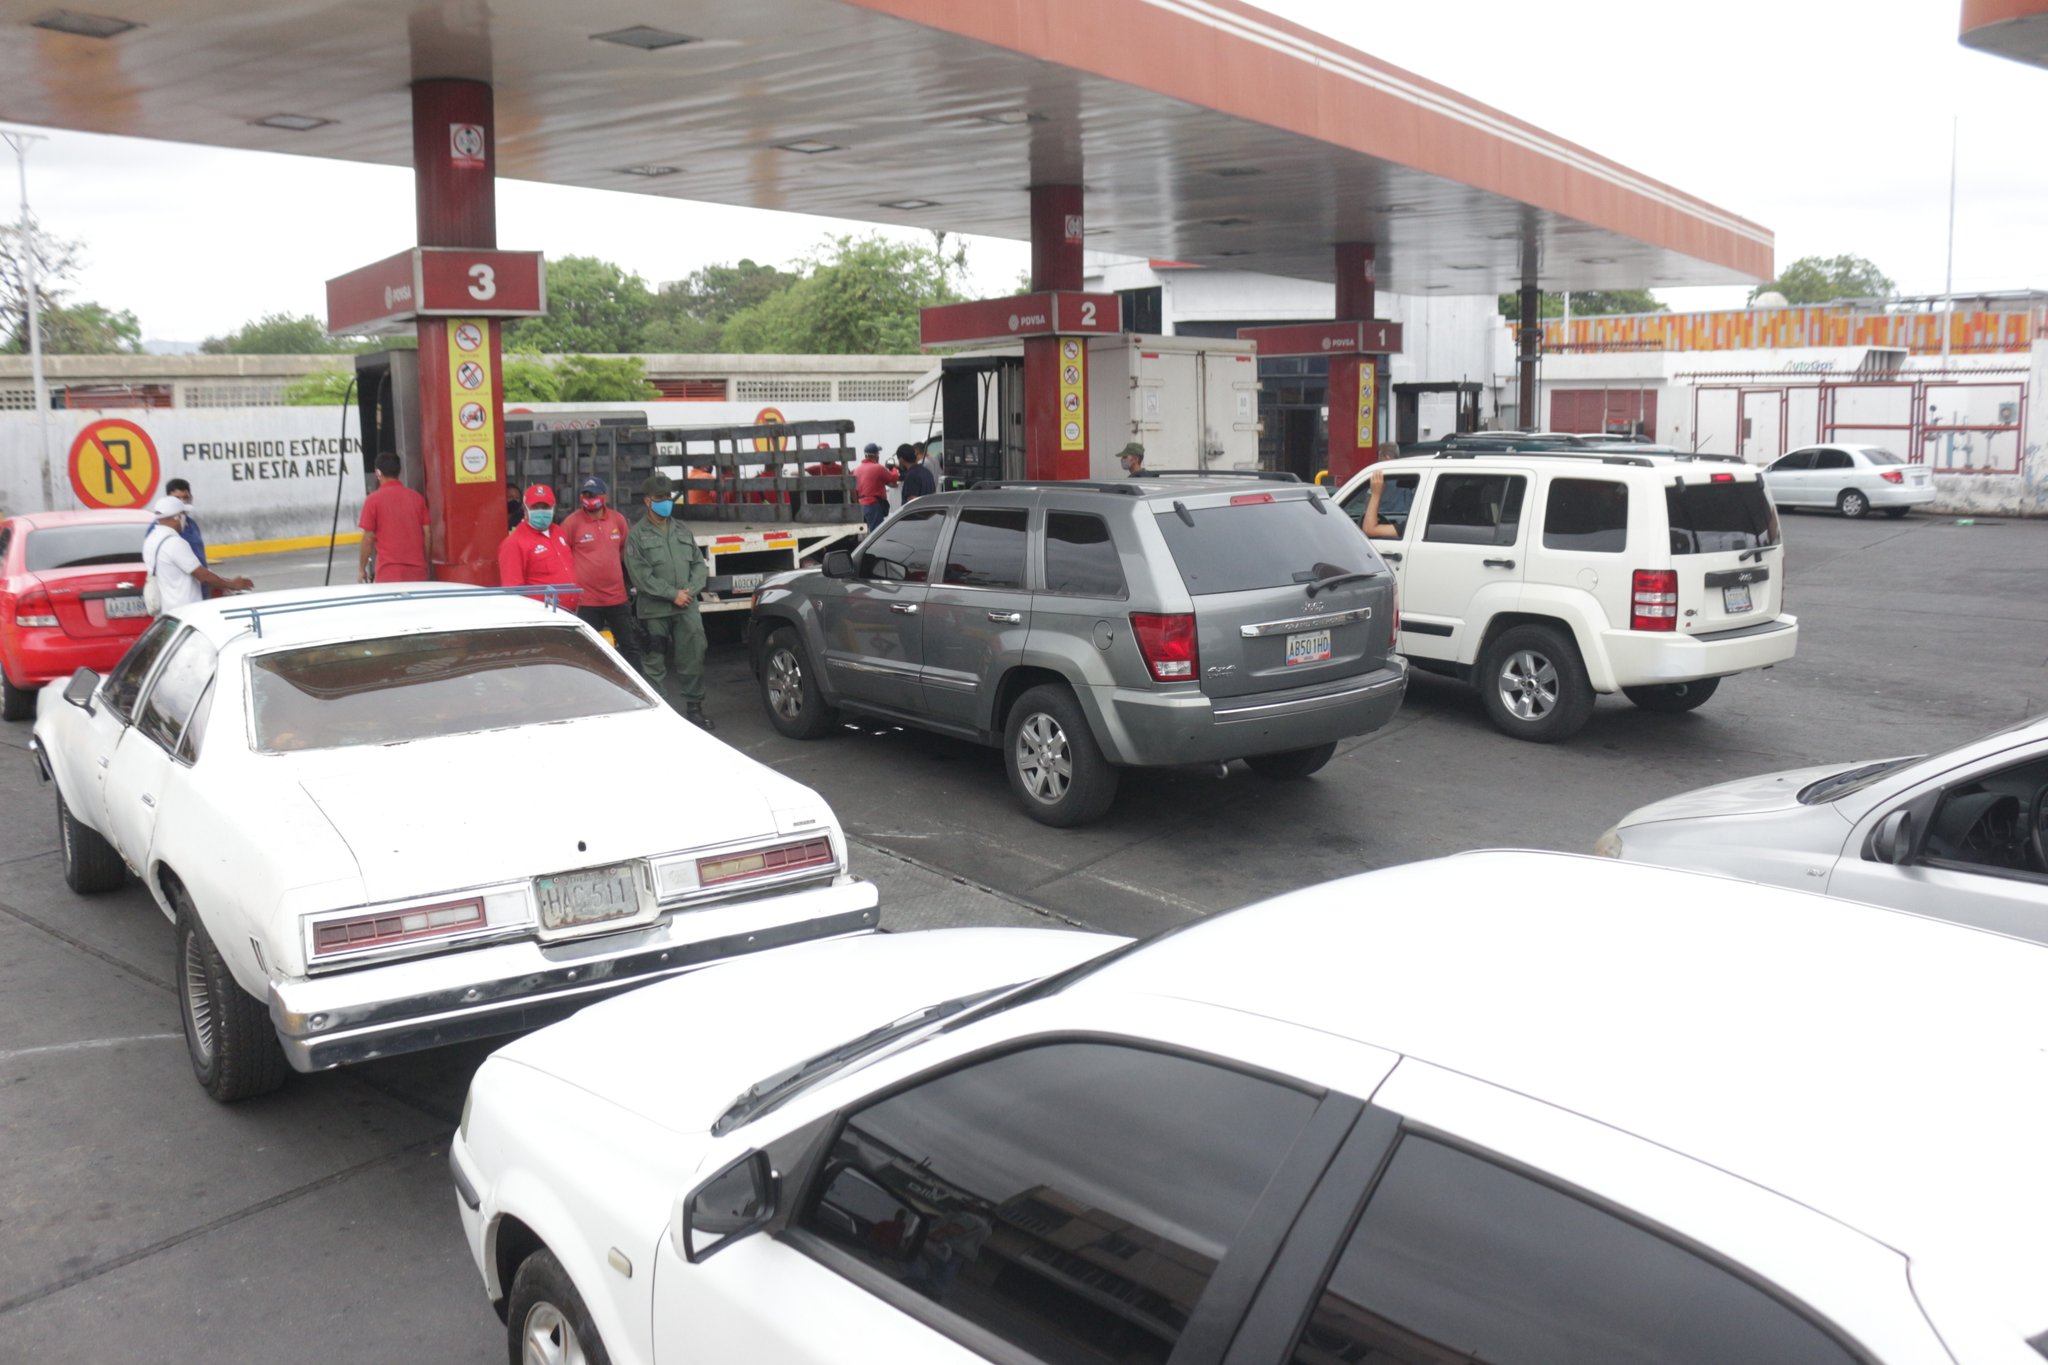 Como no llegó el sistema biopago, en Lara están surtiendo gasolina GRATIS a los carros #1Jun (FOTO)